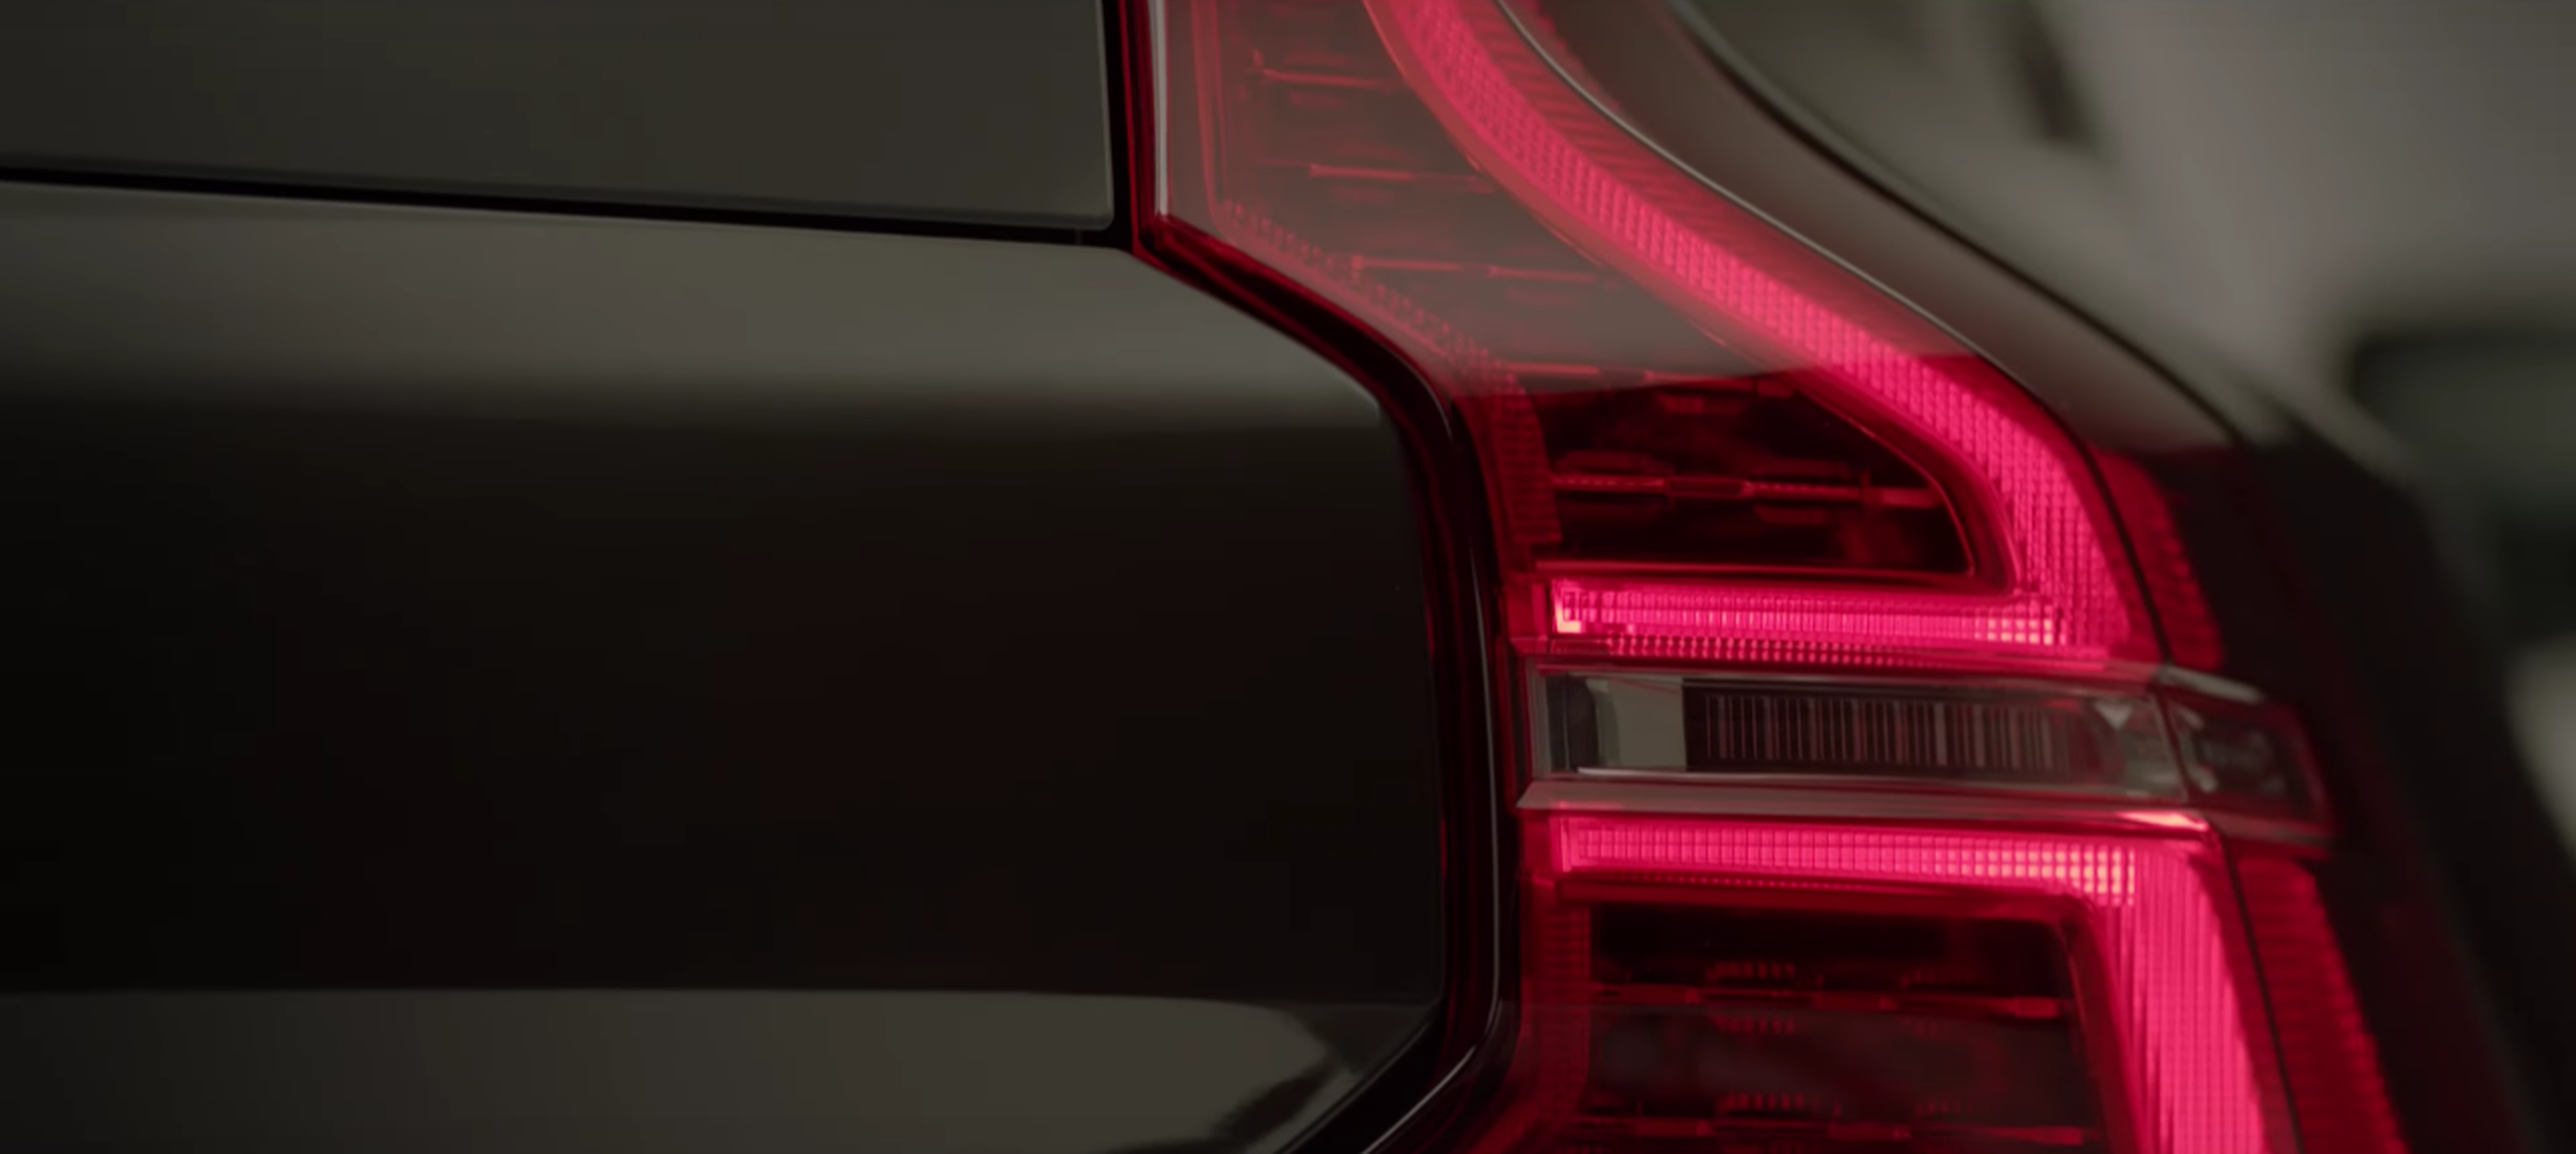 VÍDEO: Volvo XC60 2017, así lo adelantan